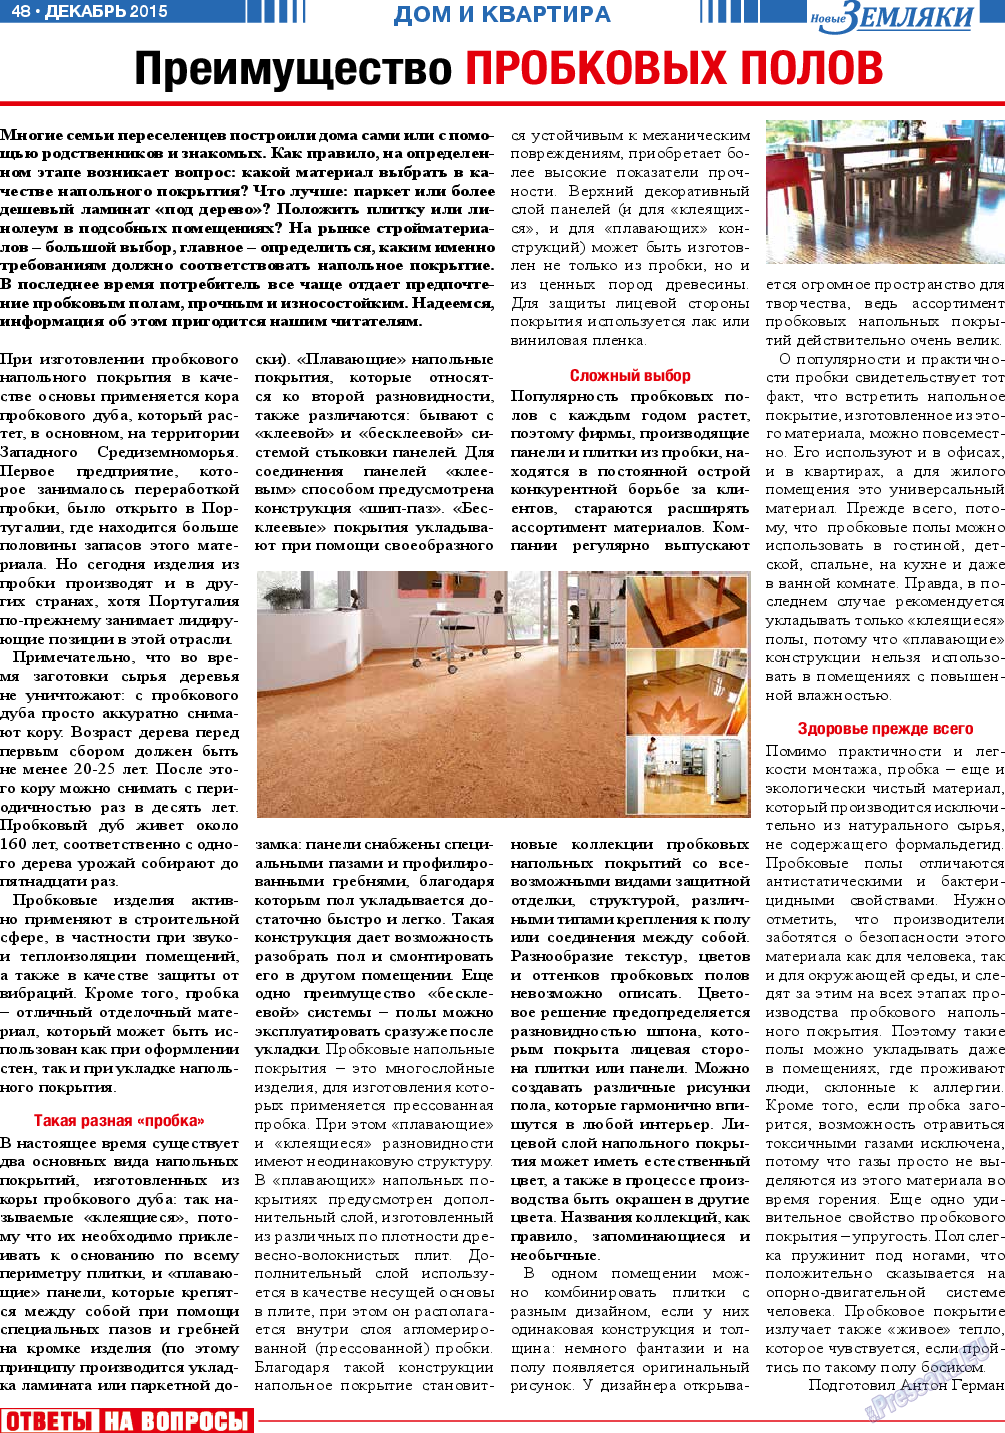 Новые Земляки, газета. 2015 №12 стр.48